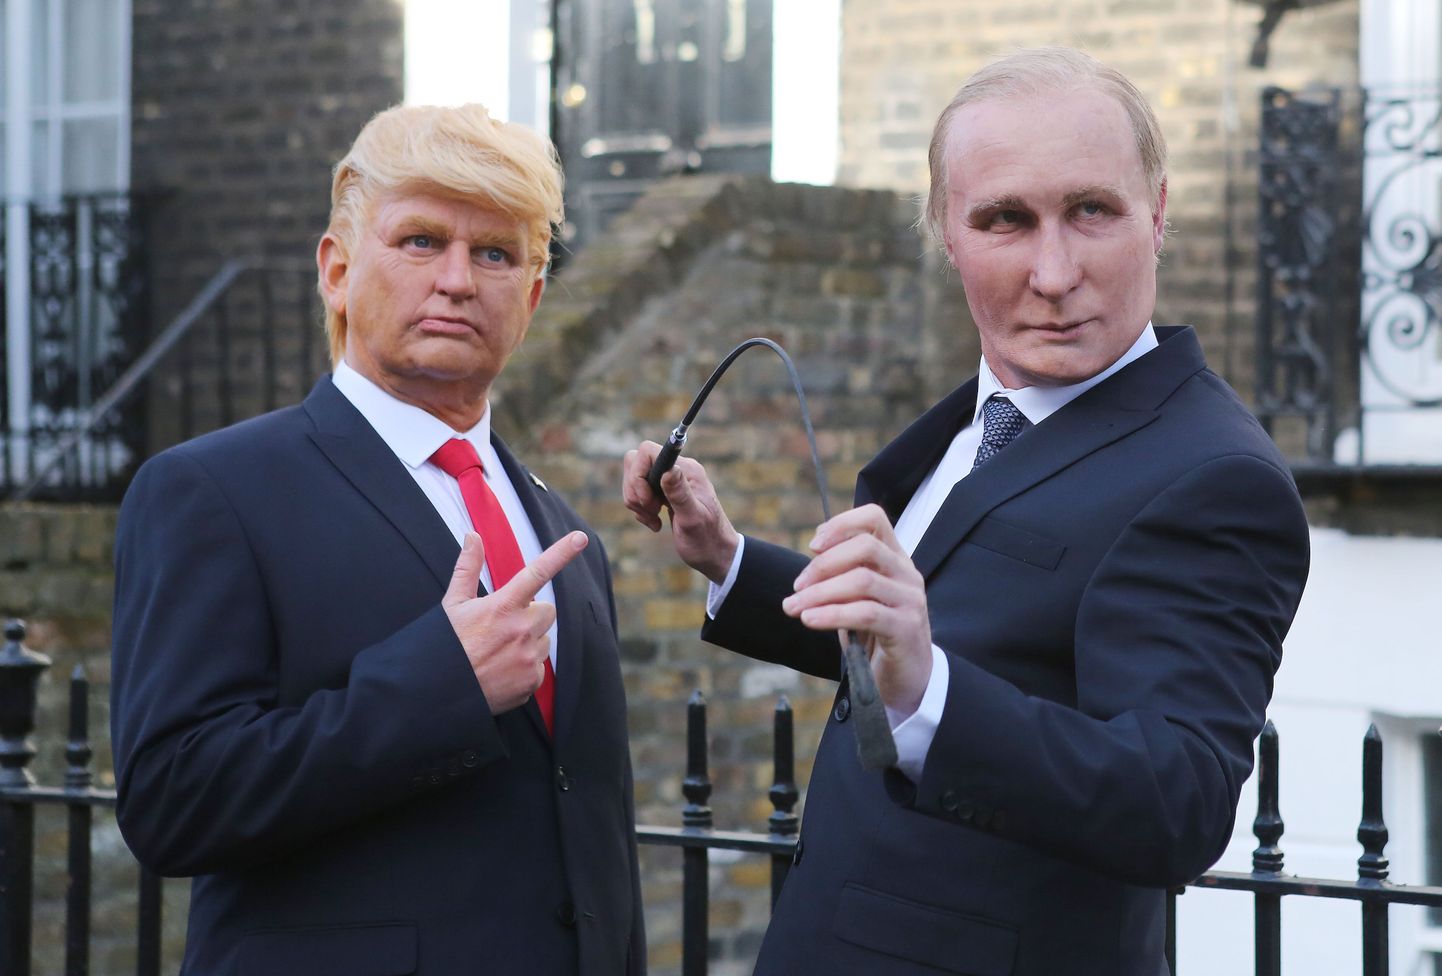 Donald Trumpi ja Vladimir Putini kostüümides inimesed.